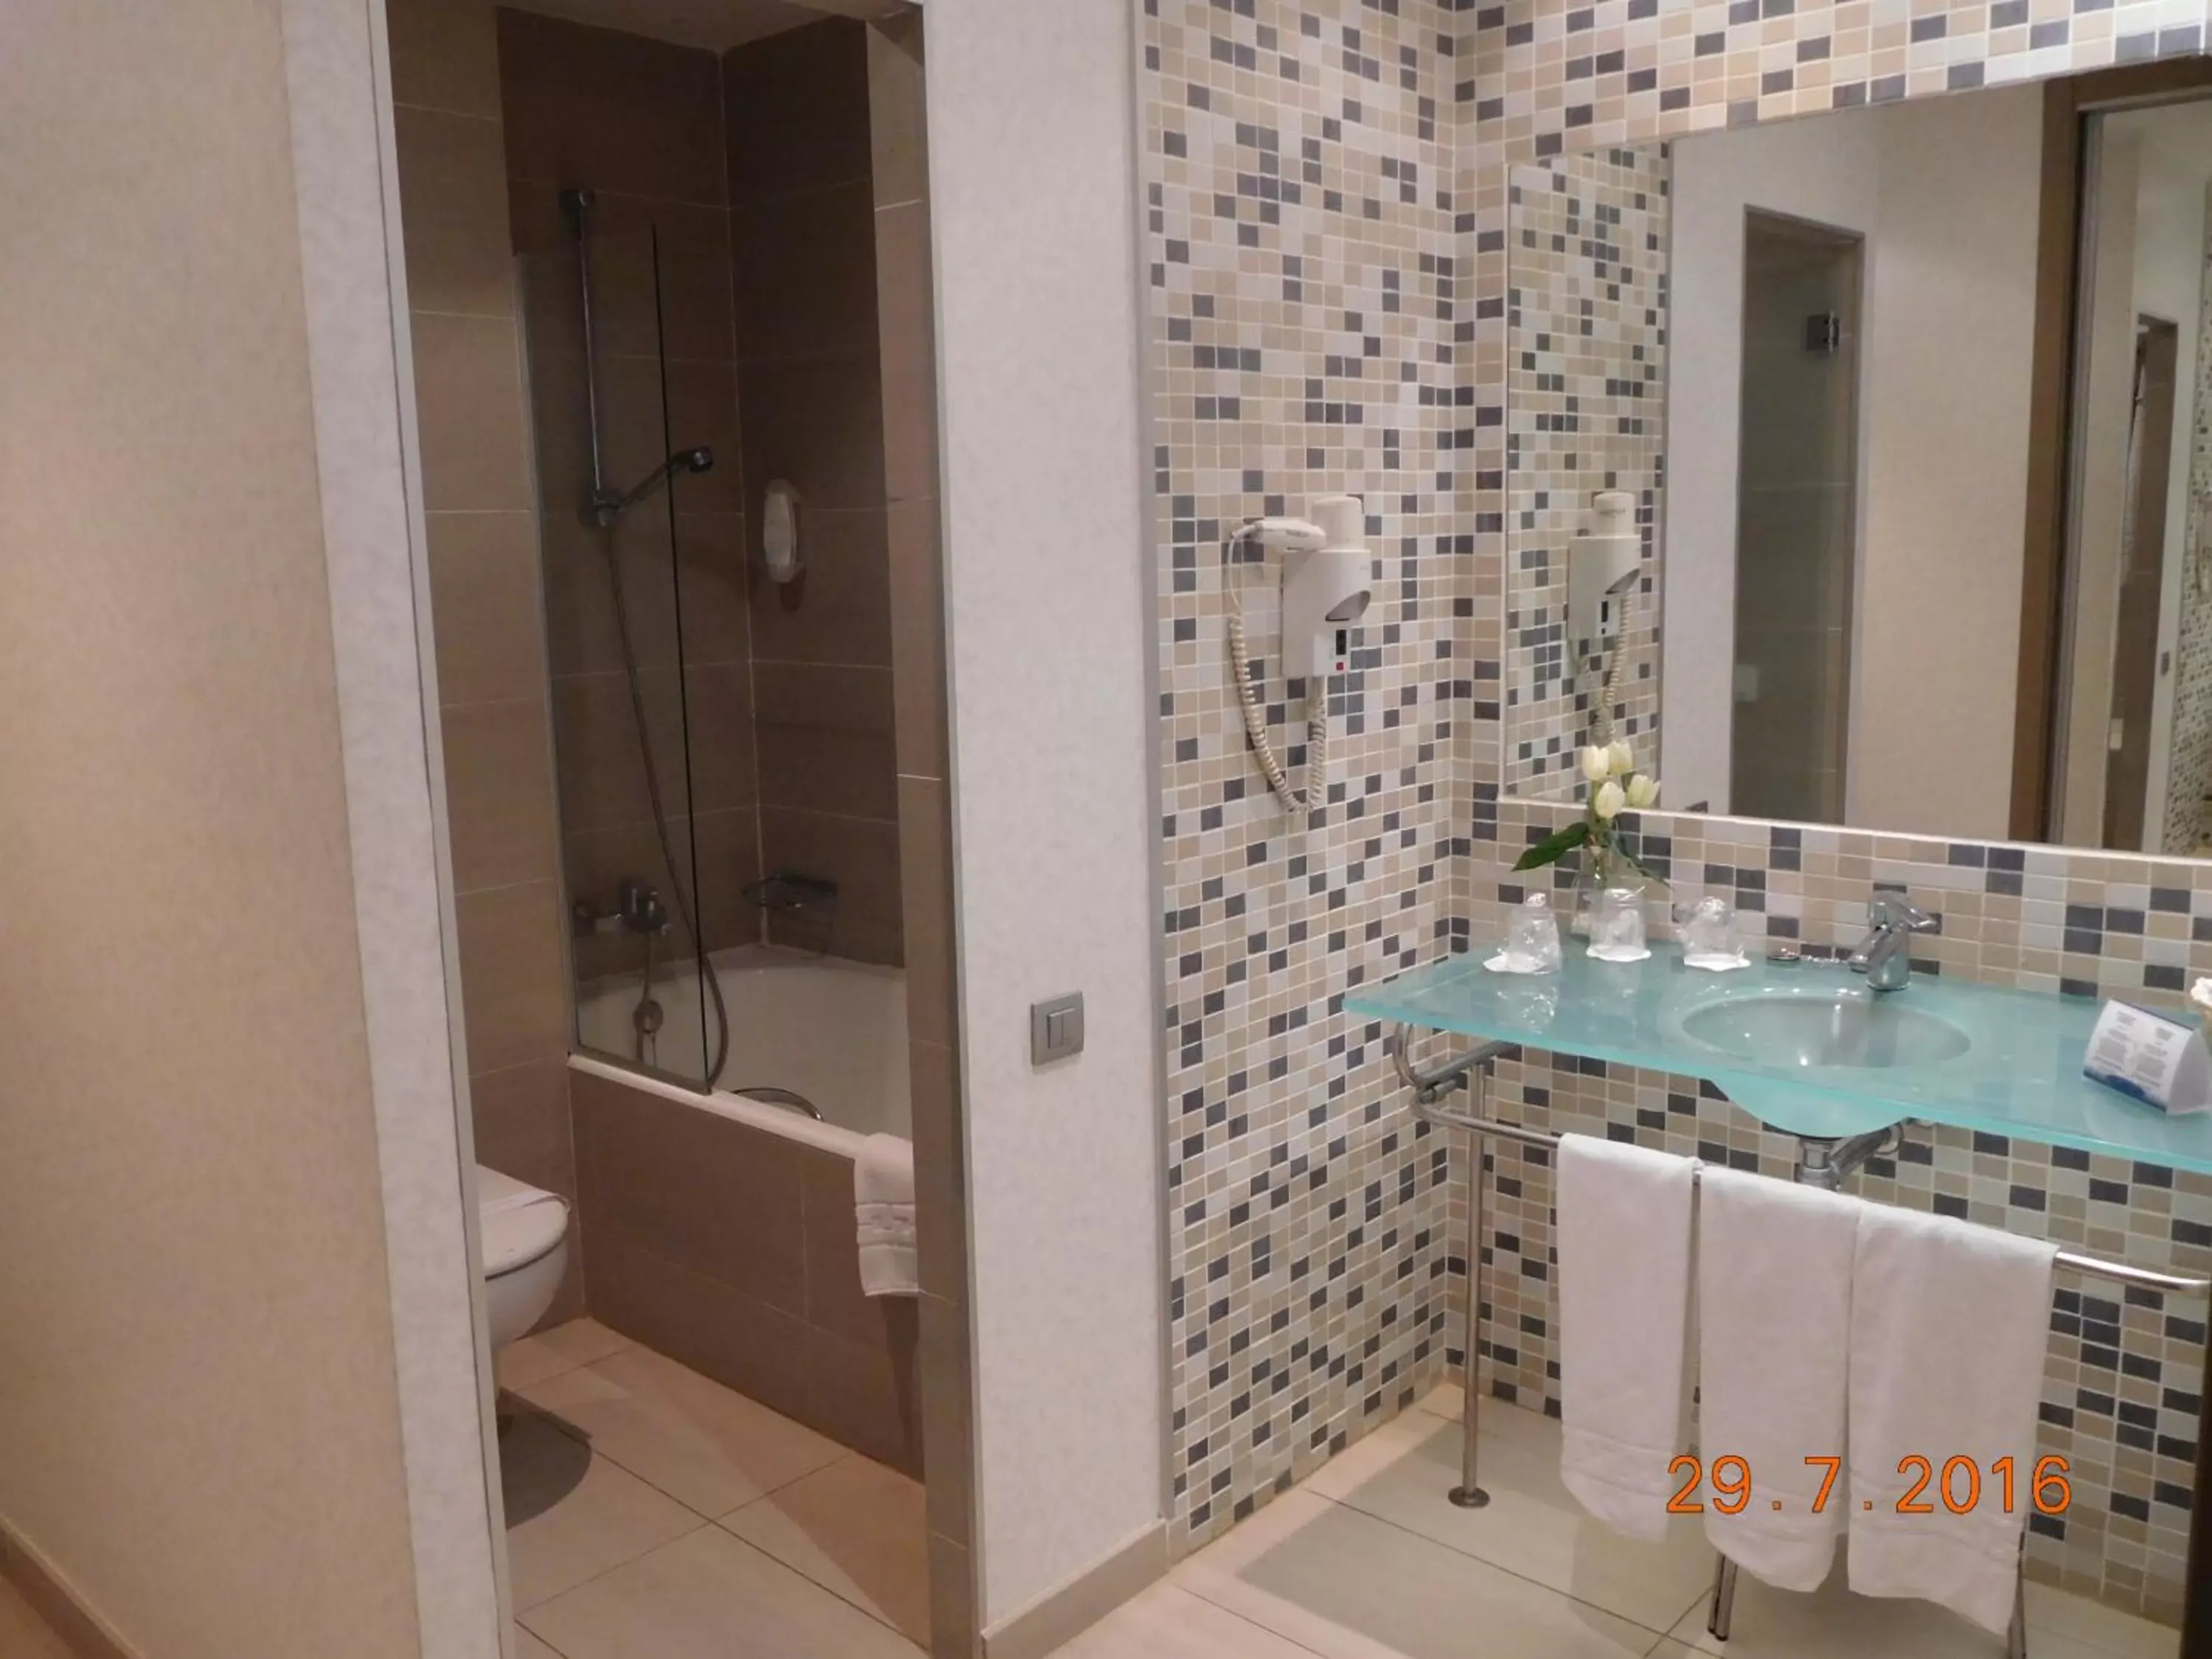 Bathroom in Hotel Mas Camarena